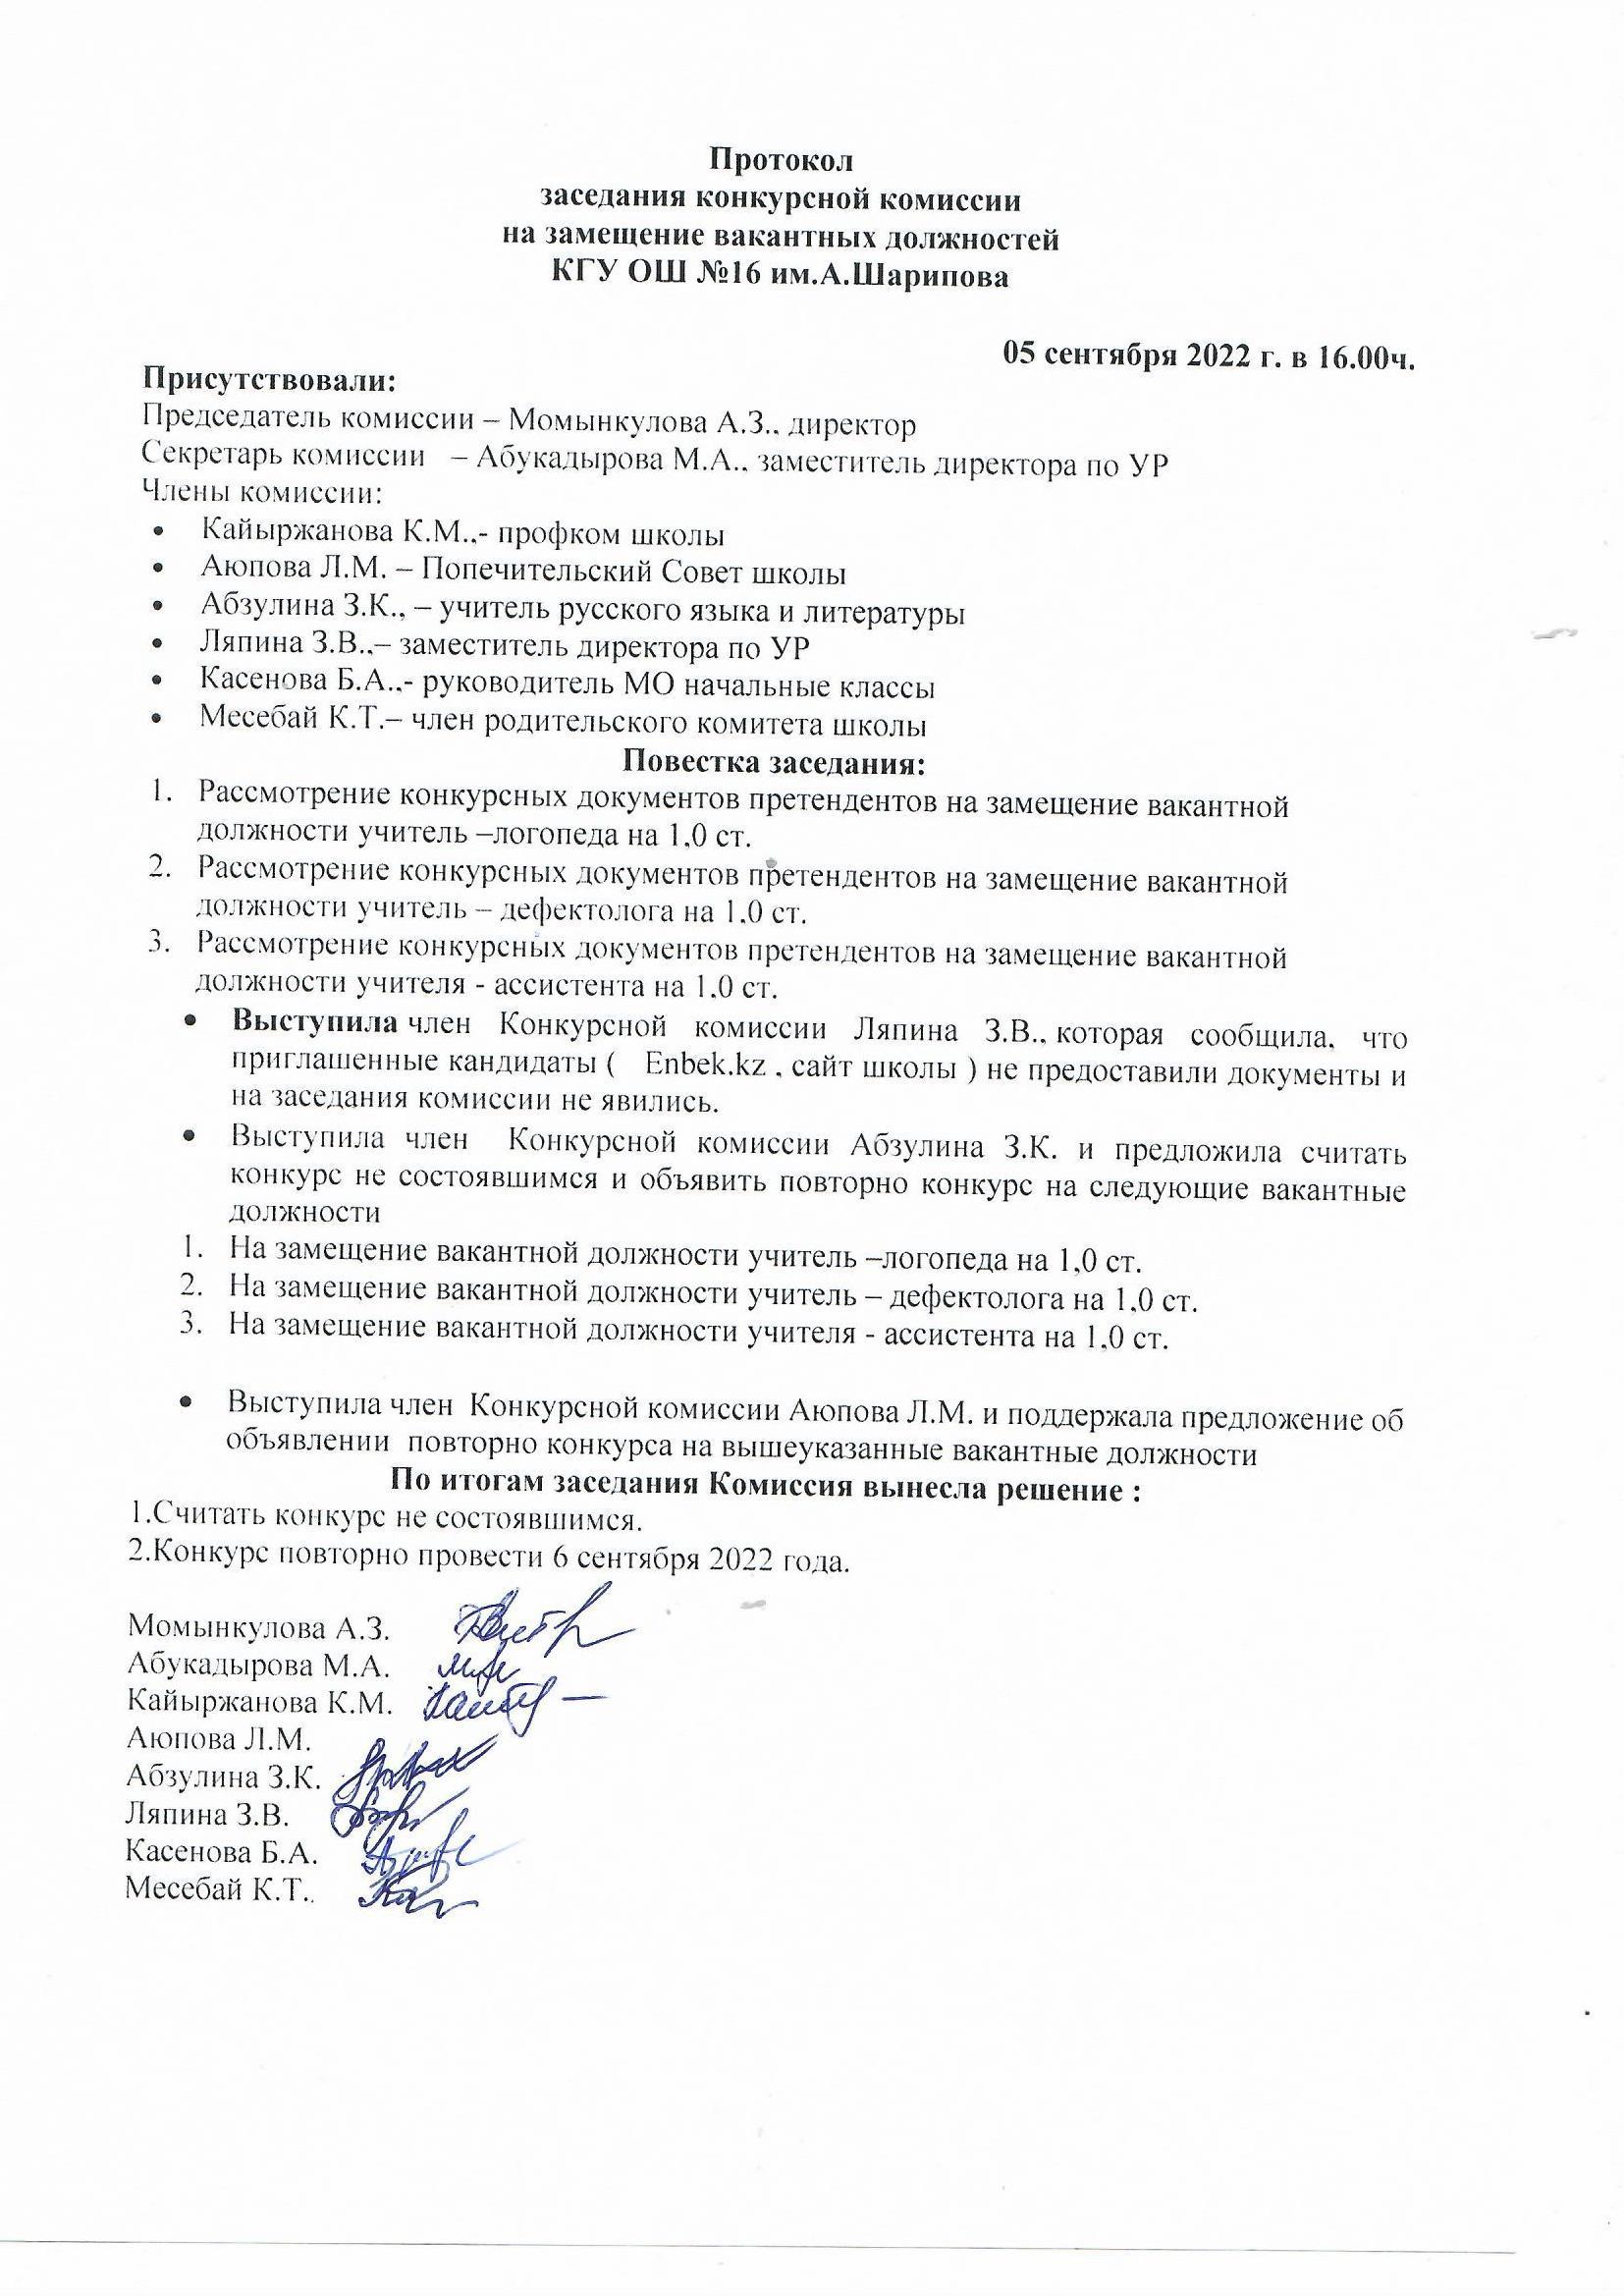 Протокол заседания конкурсной комиссии на замещение вакантных должностей КГУ ОШ №16 им. А.Шарипова.